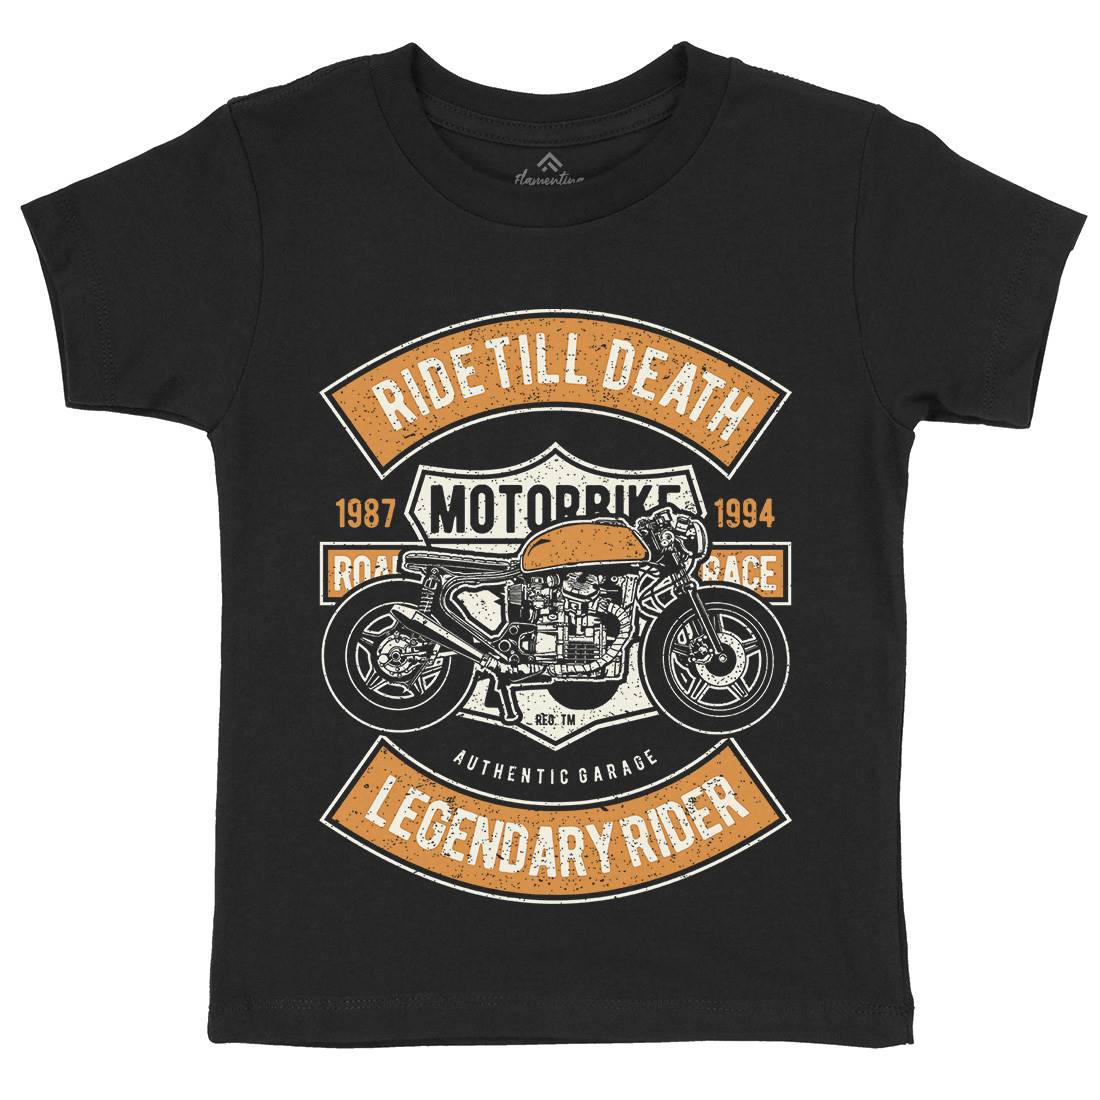 Ride Till Death Kids Organic Crew Neck T-Shirt Motorcycles A743